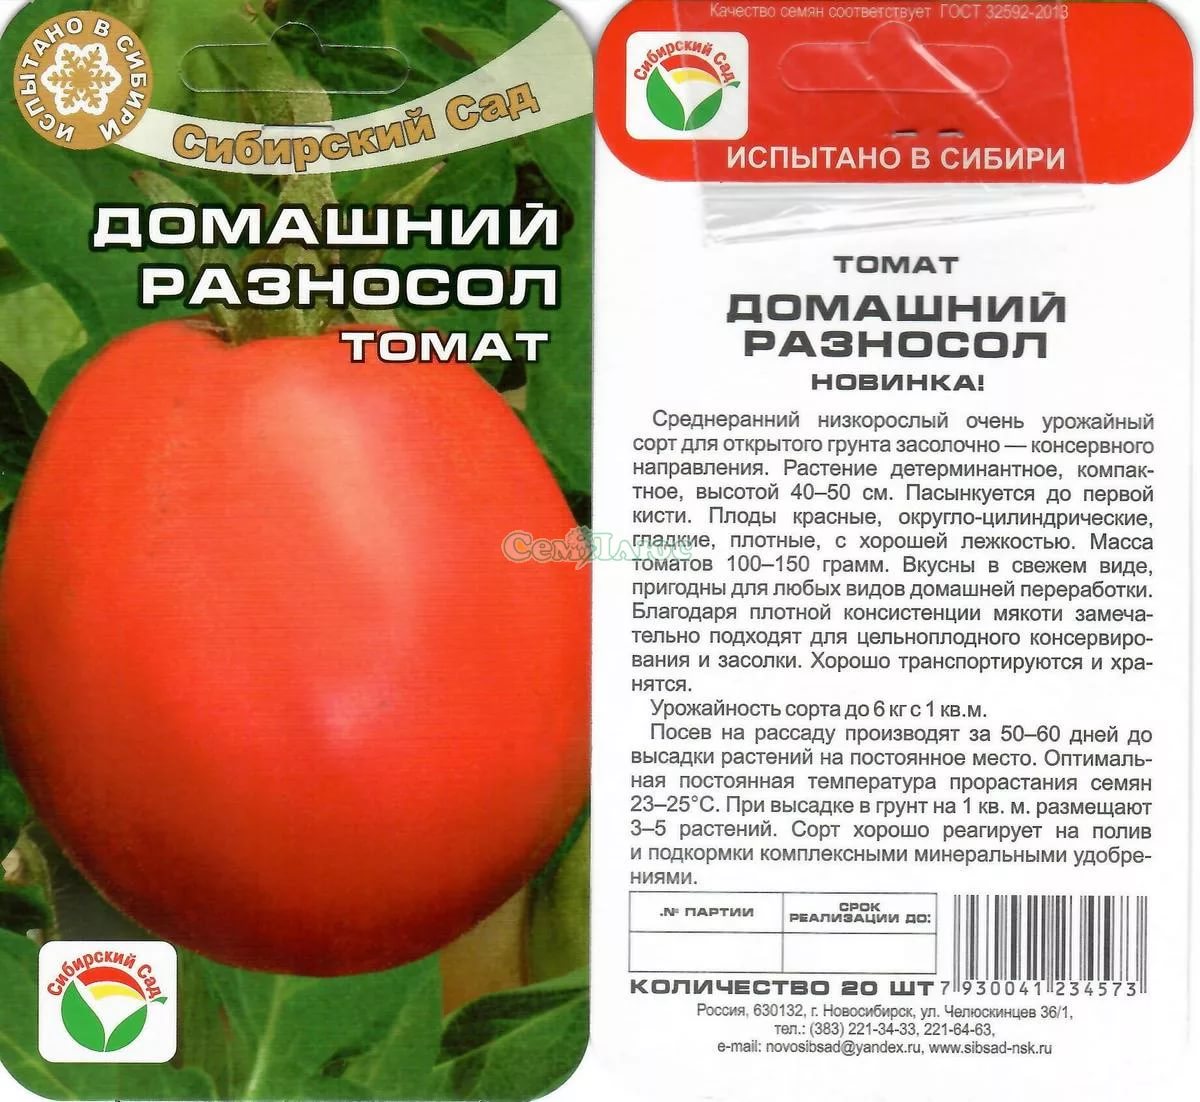 Сорт томата яблонька россии фото и описание